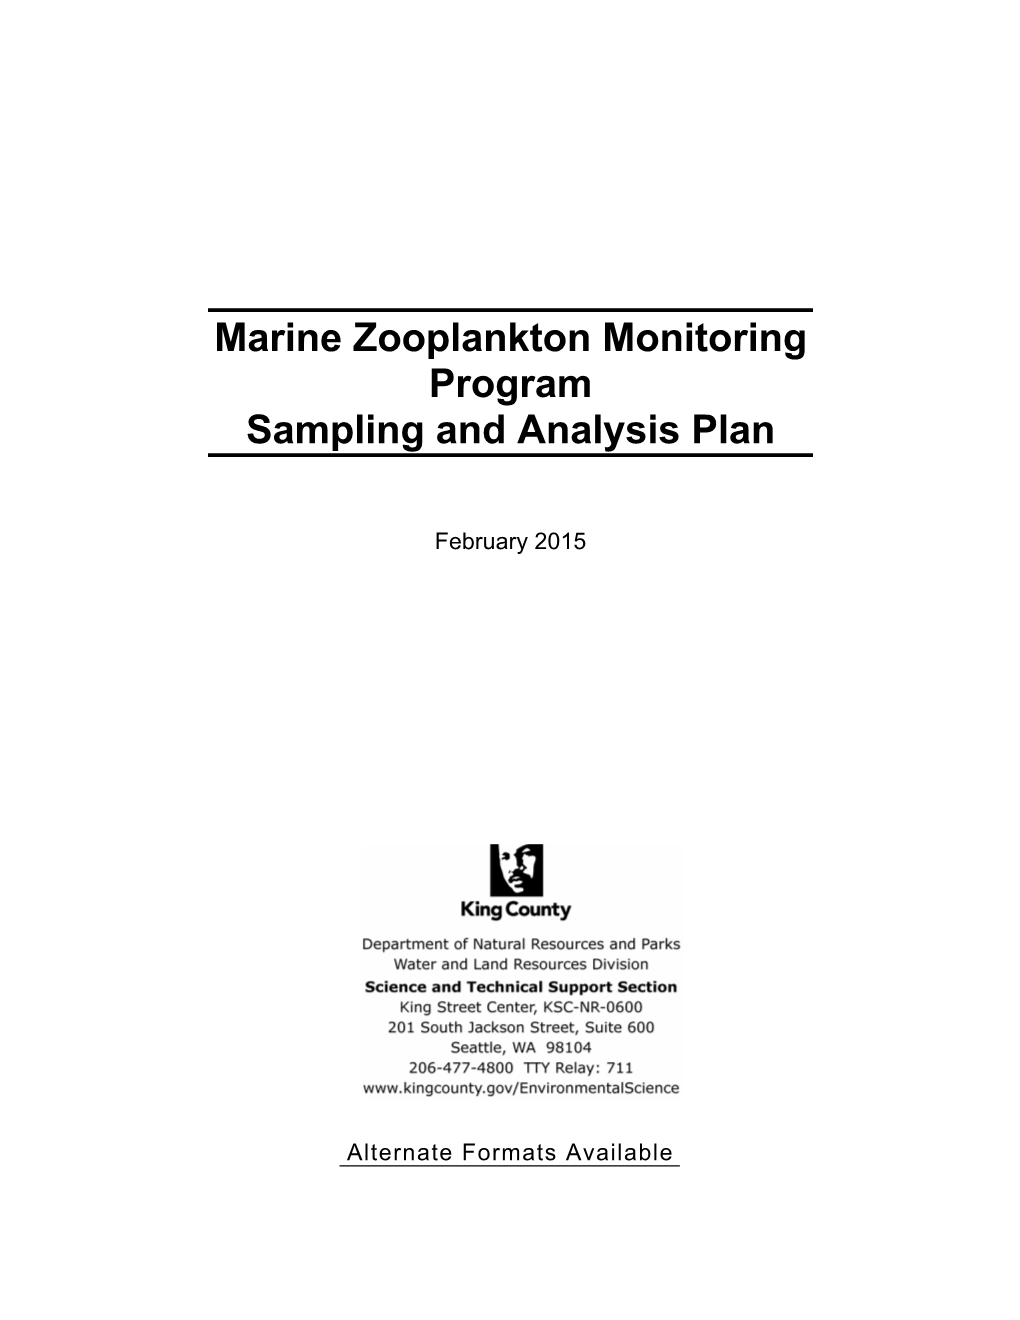 Marine Zooplankton Monitoring Program Sampling and Analysis Plan